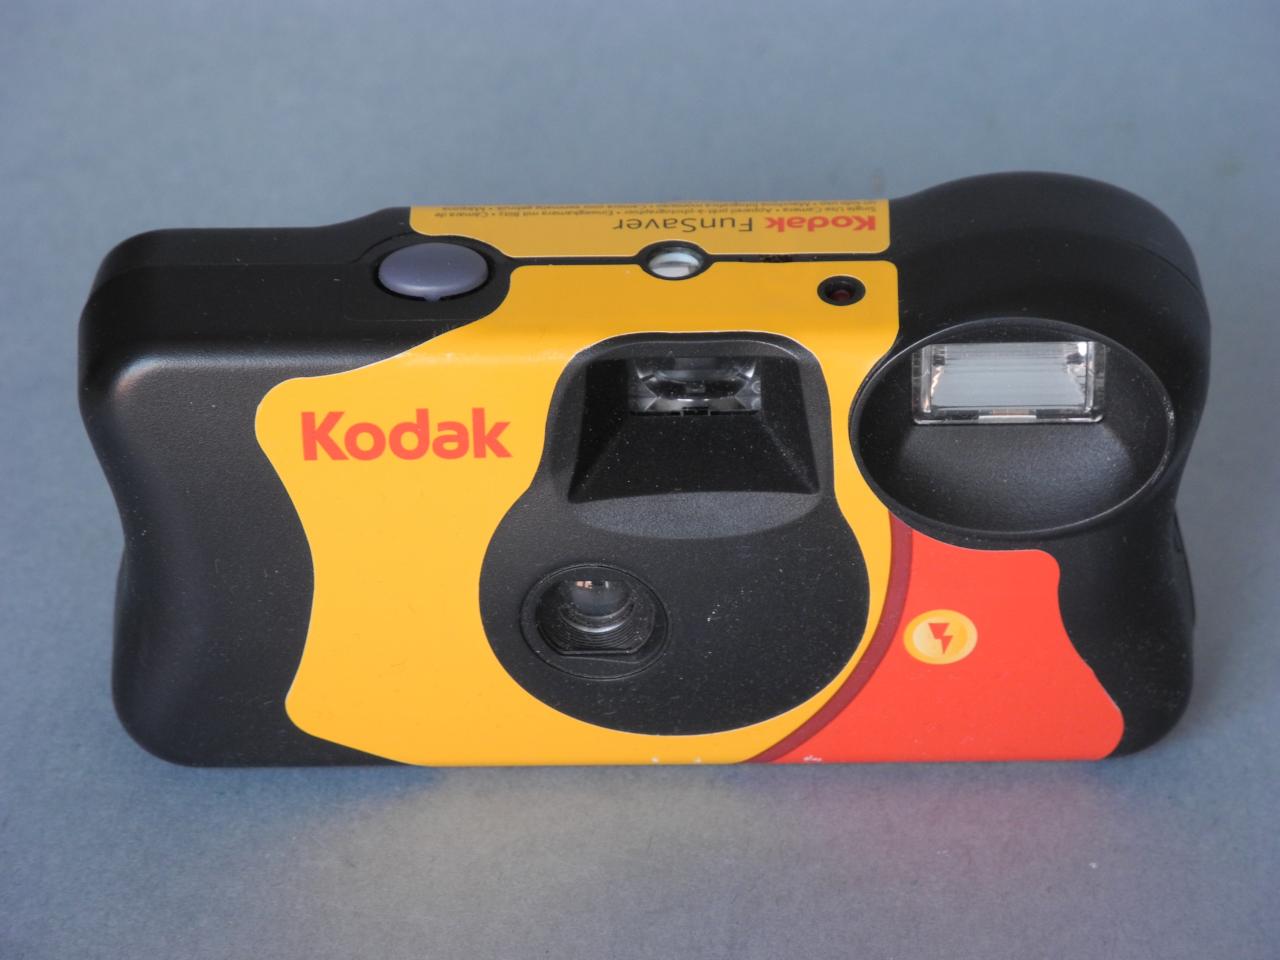 Kodak Funsaver